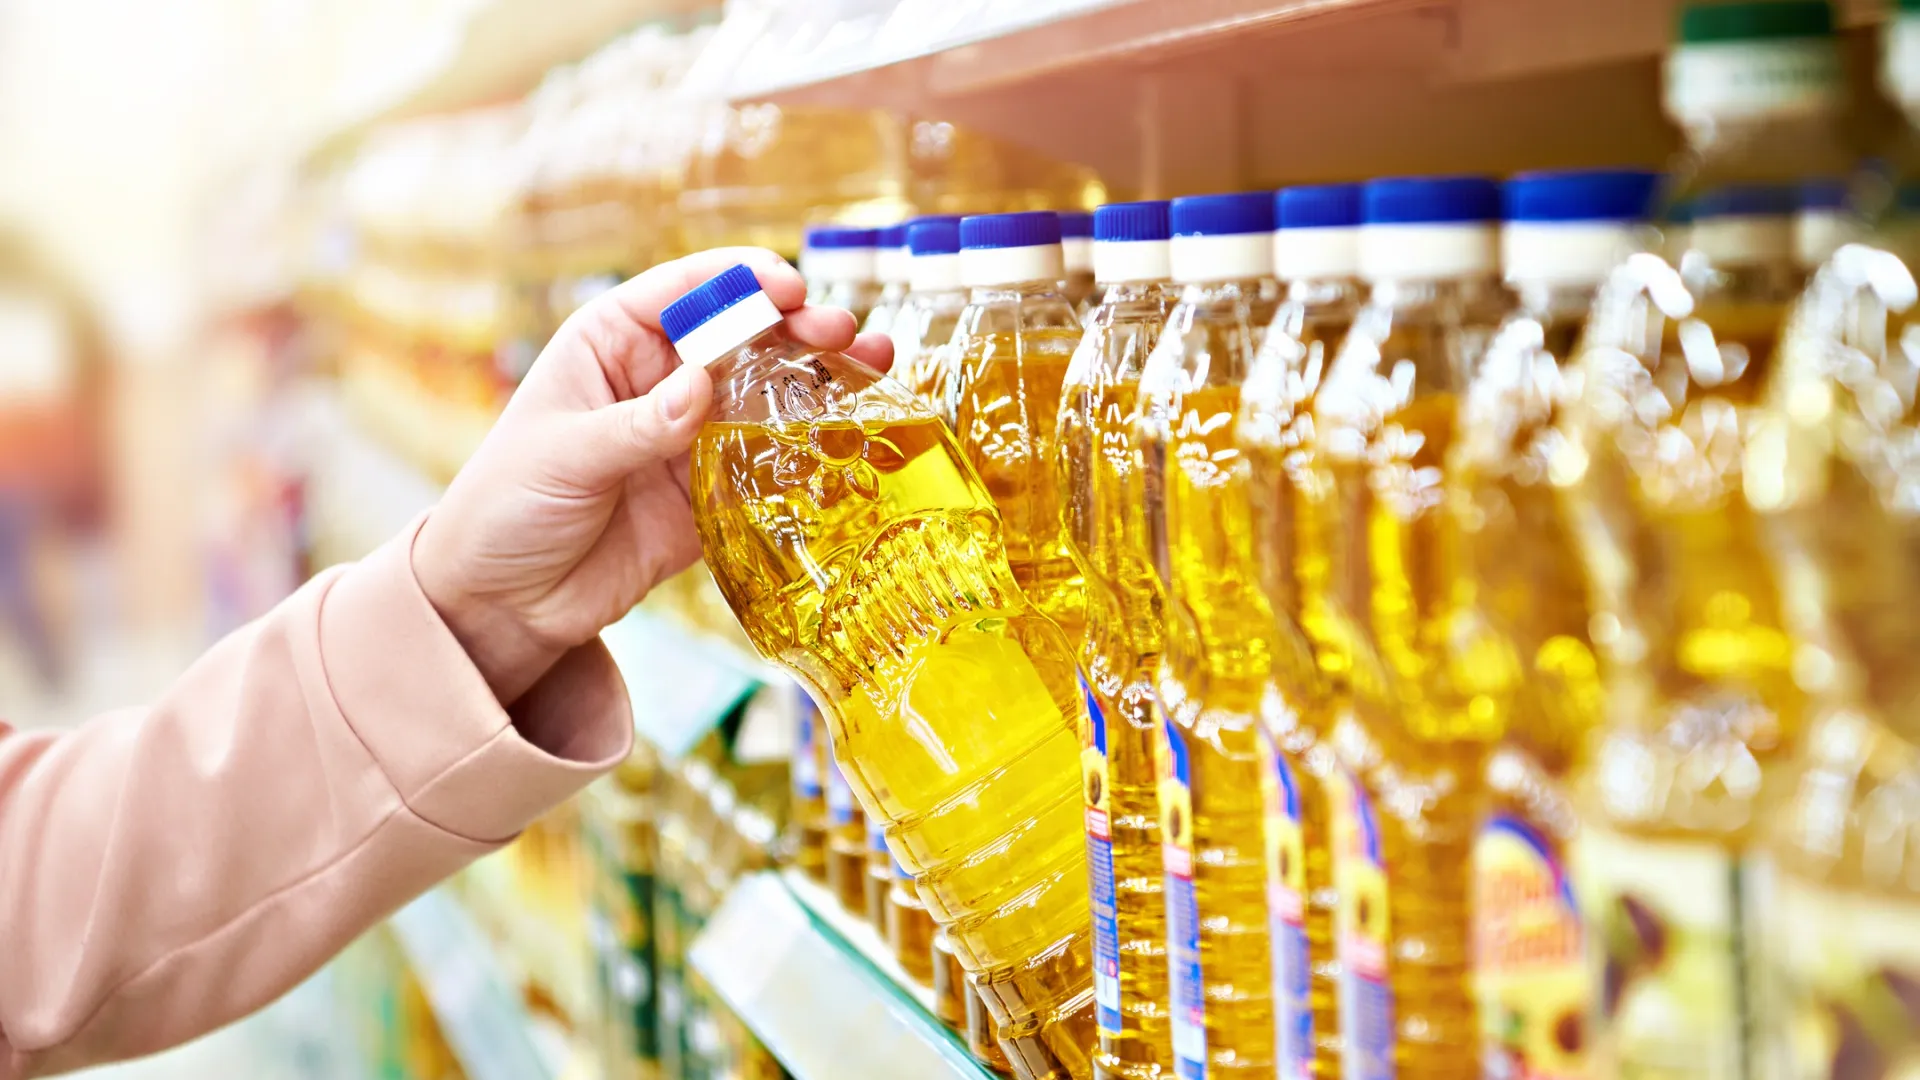 Чтобы извлечь из растительного масла максимальную пользу, нужно правильно хранить и употреблять его. Фото: Sergey Ryzhov / Shutterstock / Fotodom